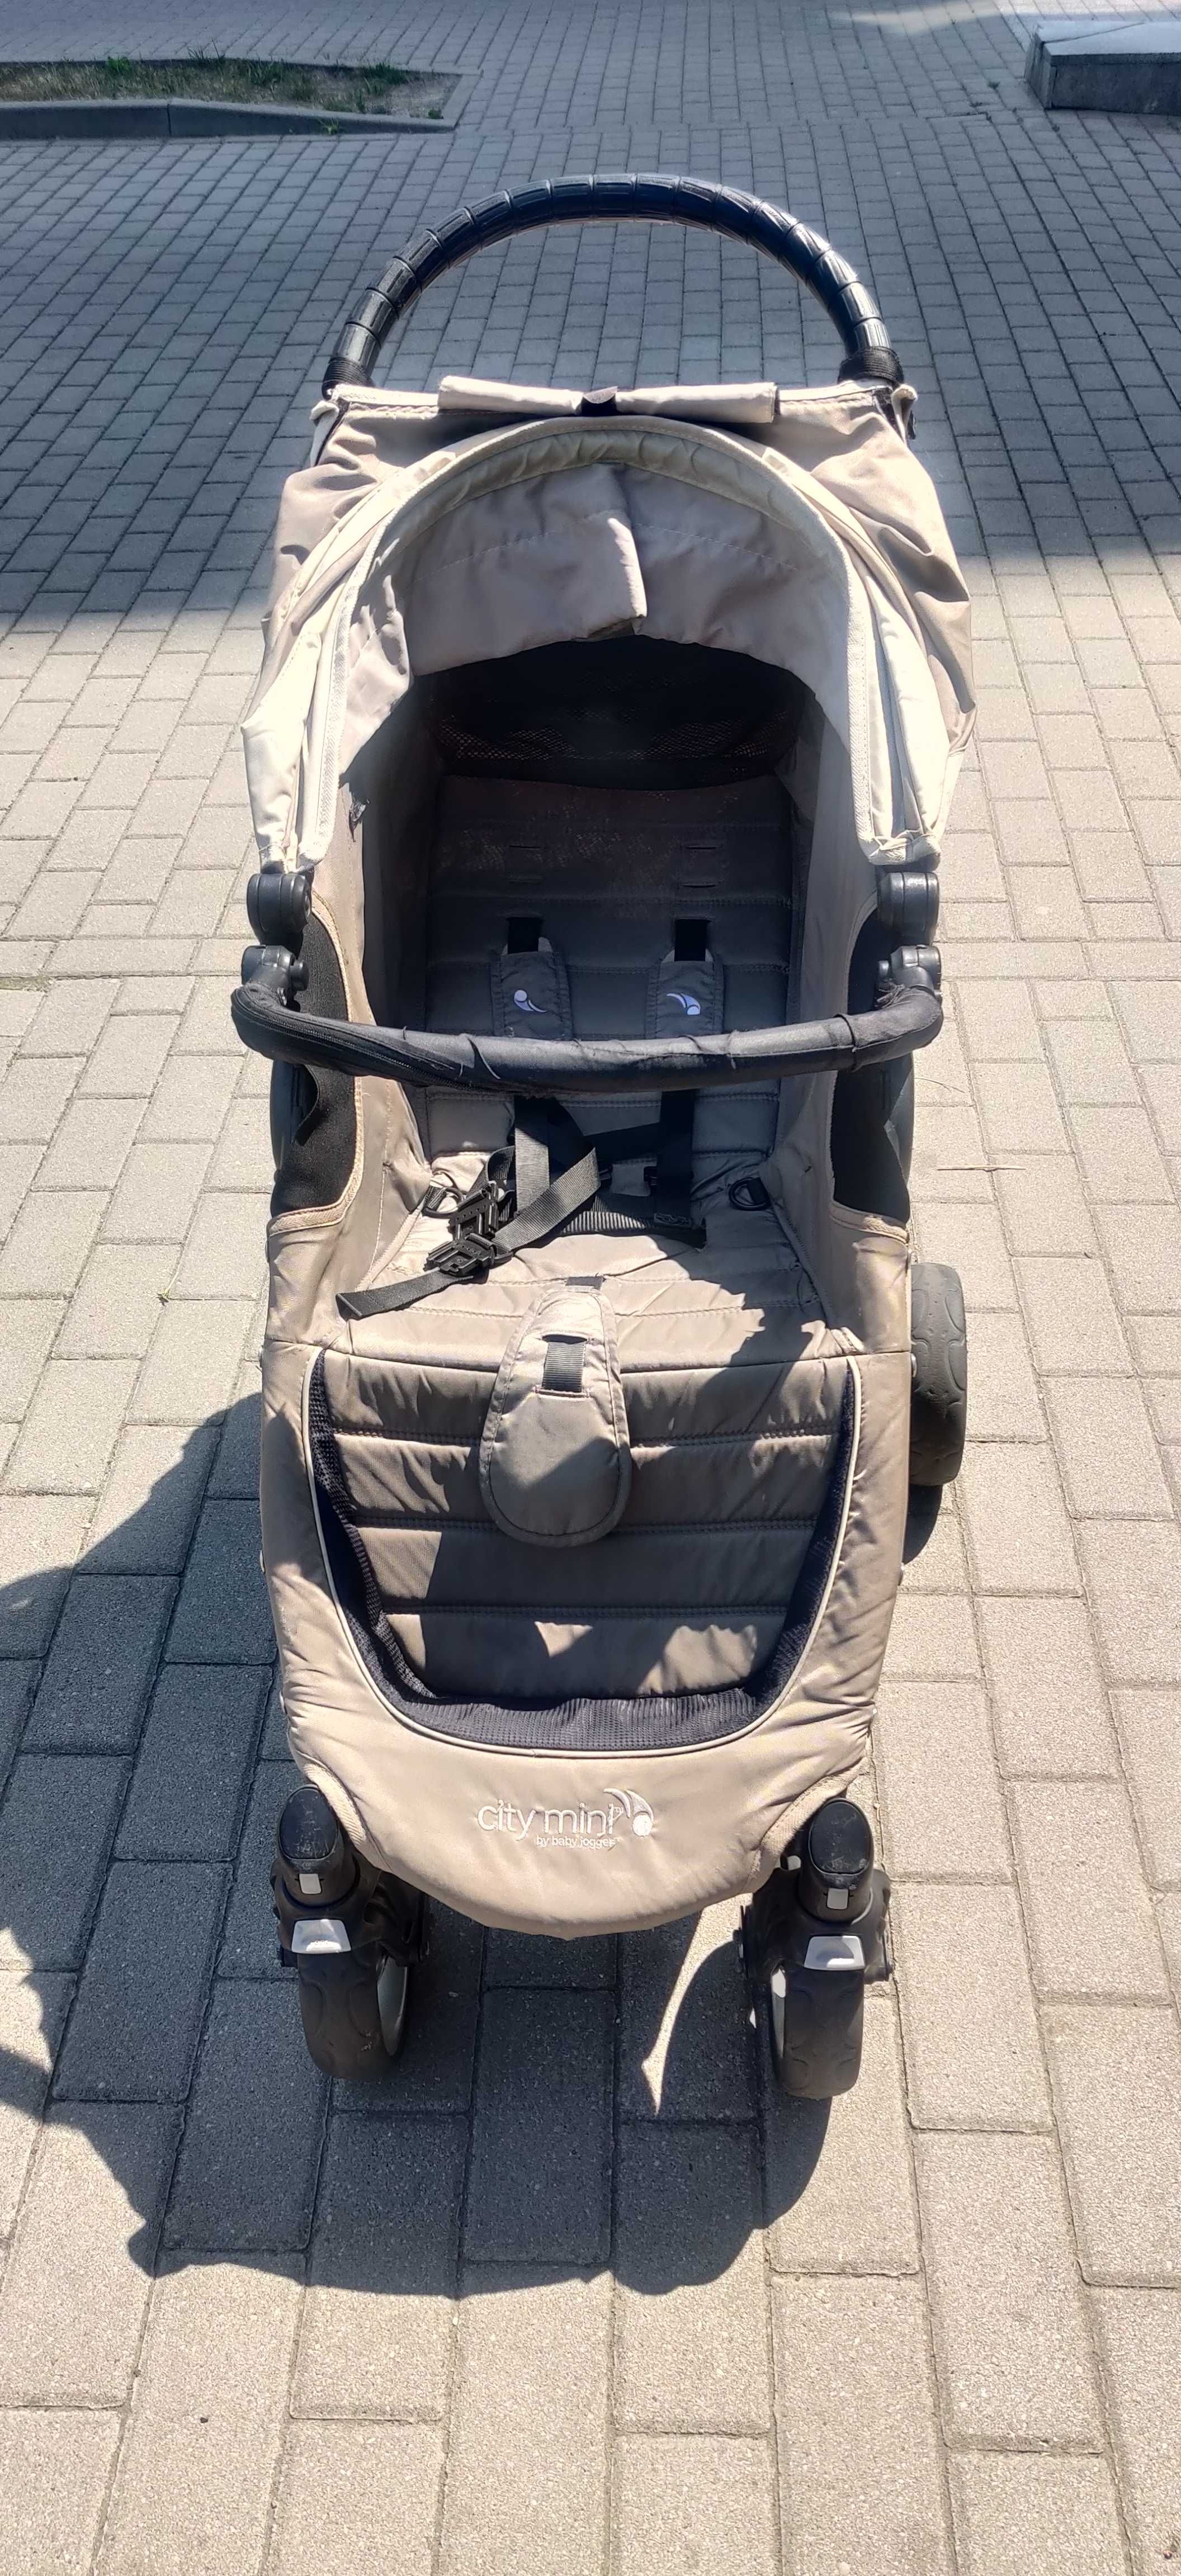 Baby Jogger City Mini 4 koła wózek dla dziecka (dziecięcy) + dodatki